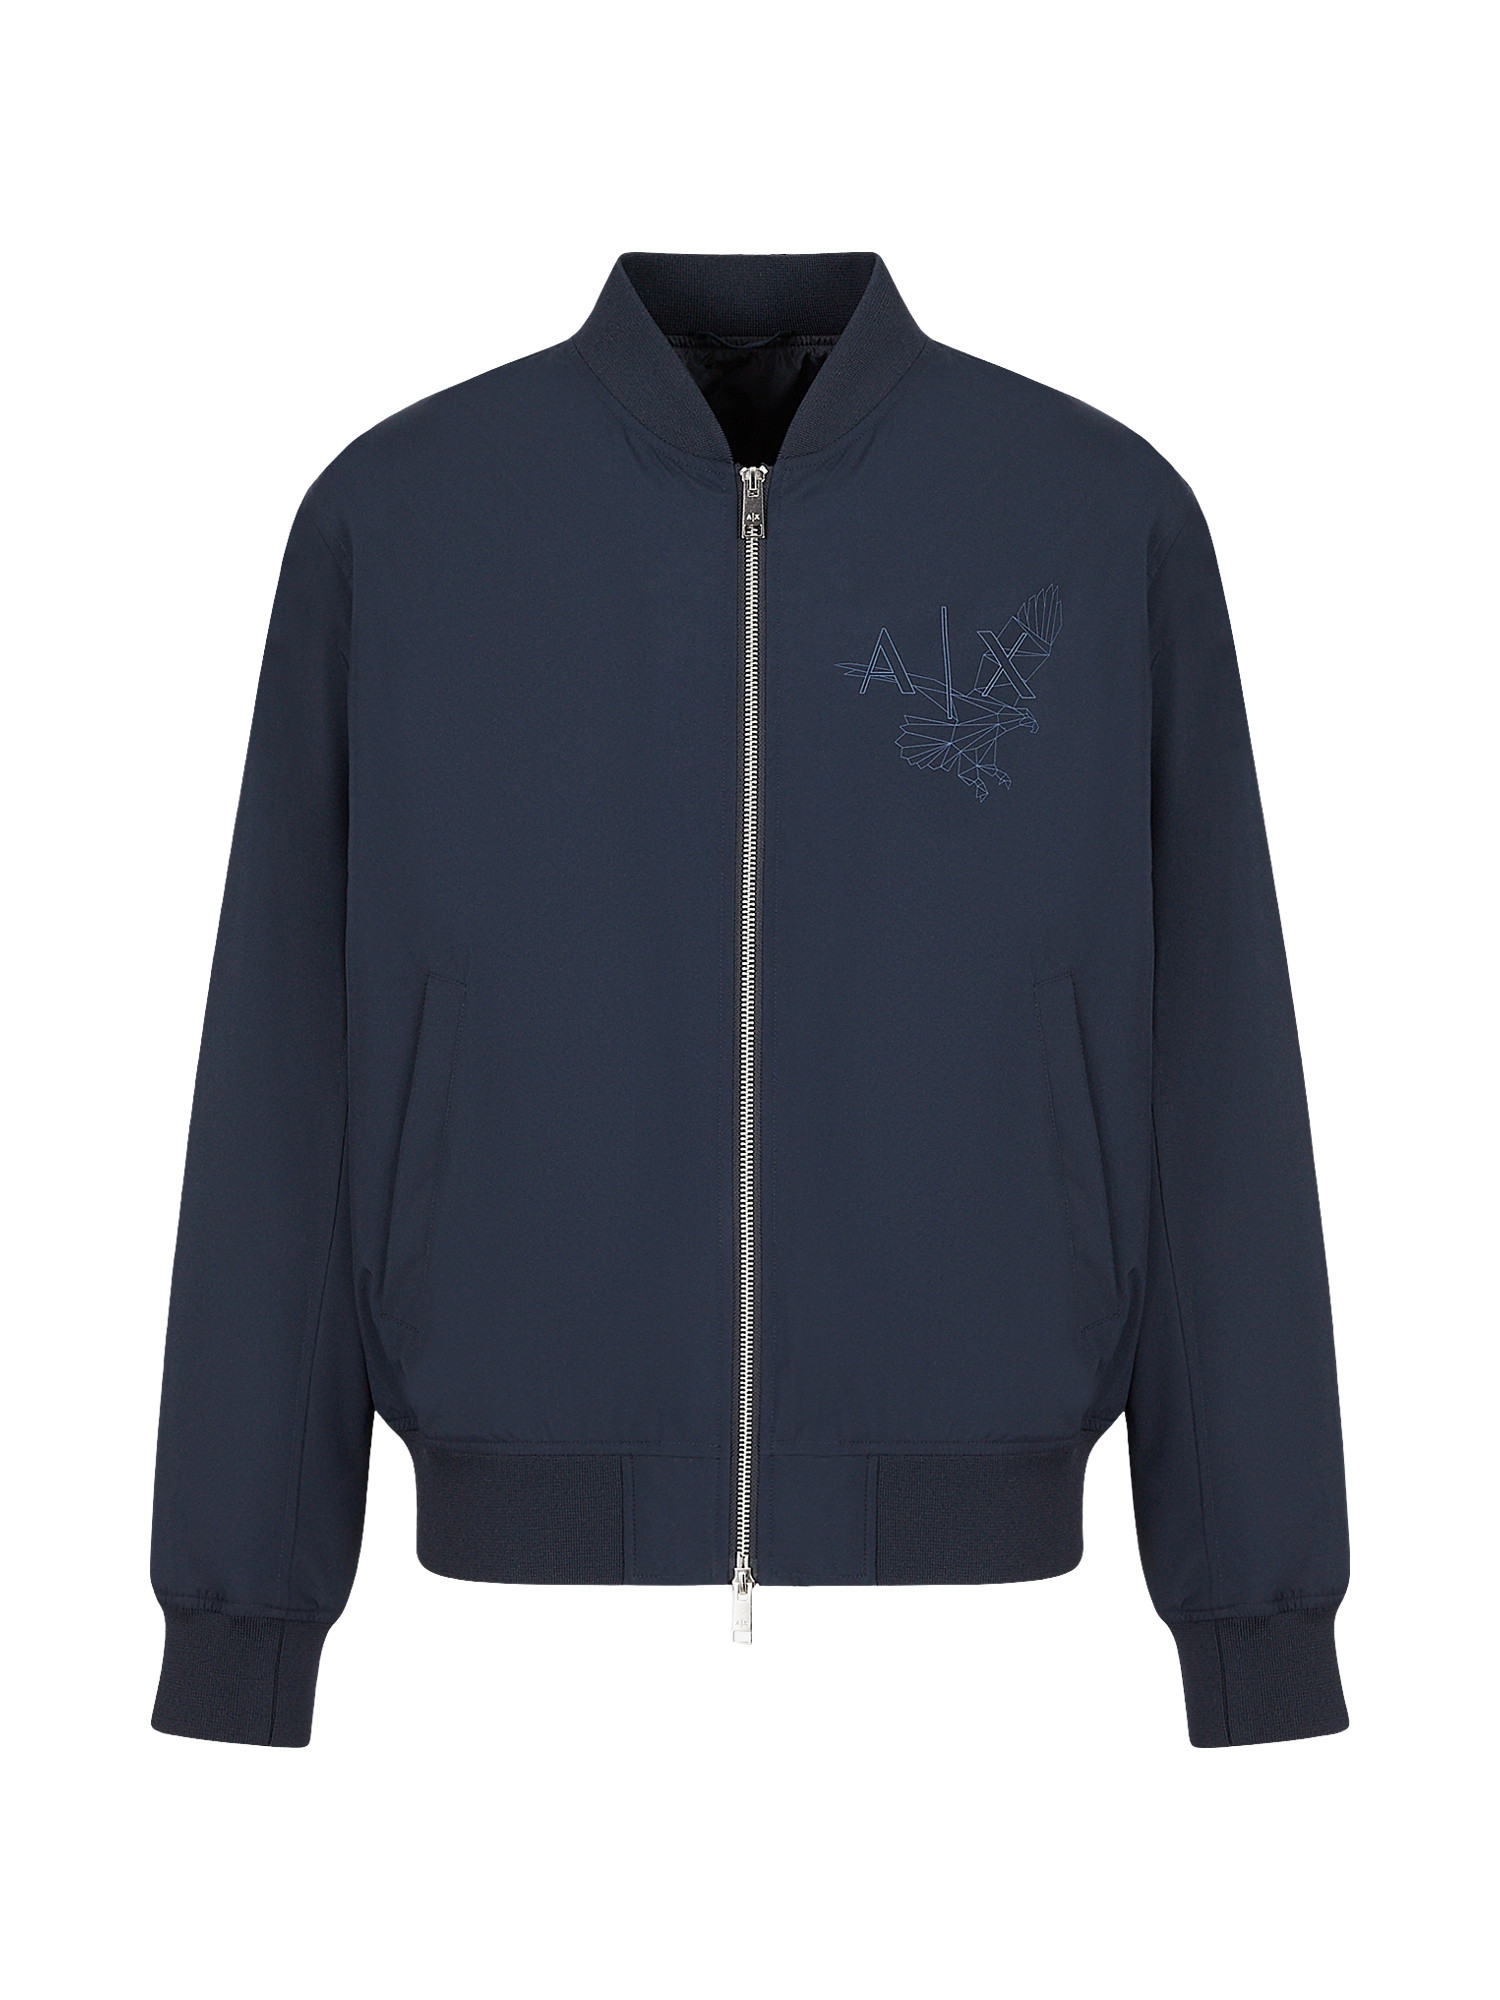 Armani Exchange - Bomber jacket with logo, Blue, large image number 0